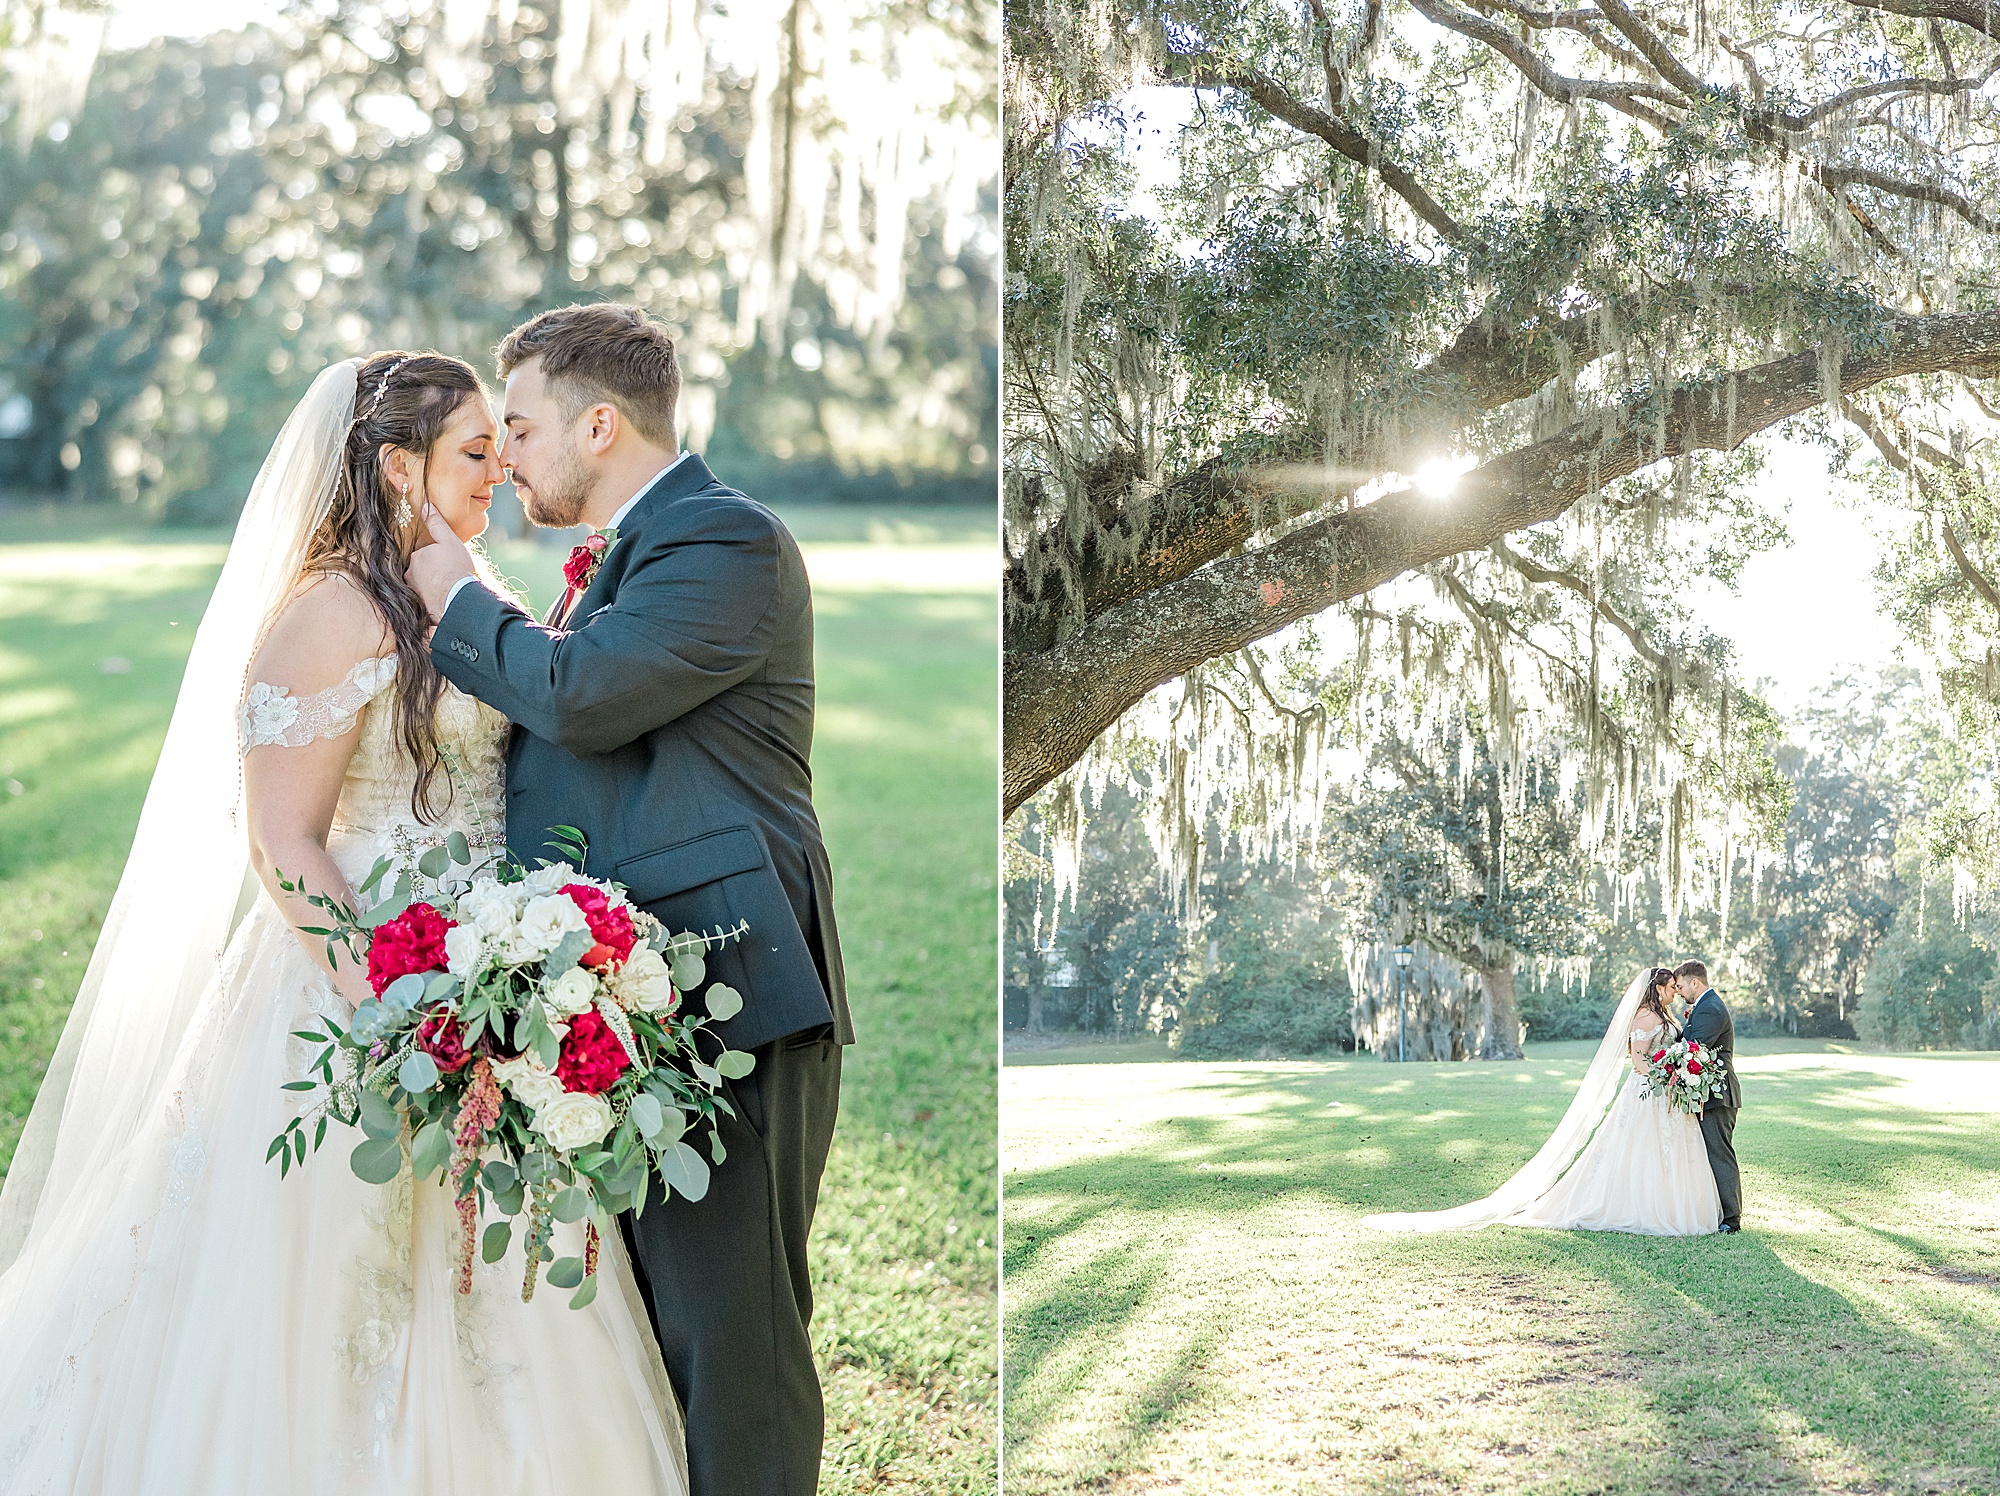 charesteston wedding photographer captures newlyweds under Spanish moss covered trees